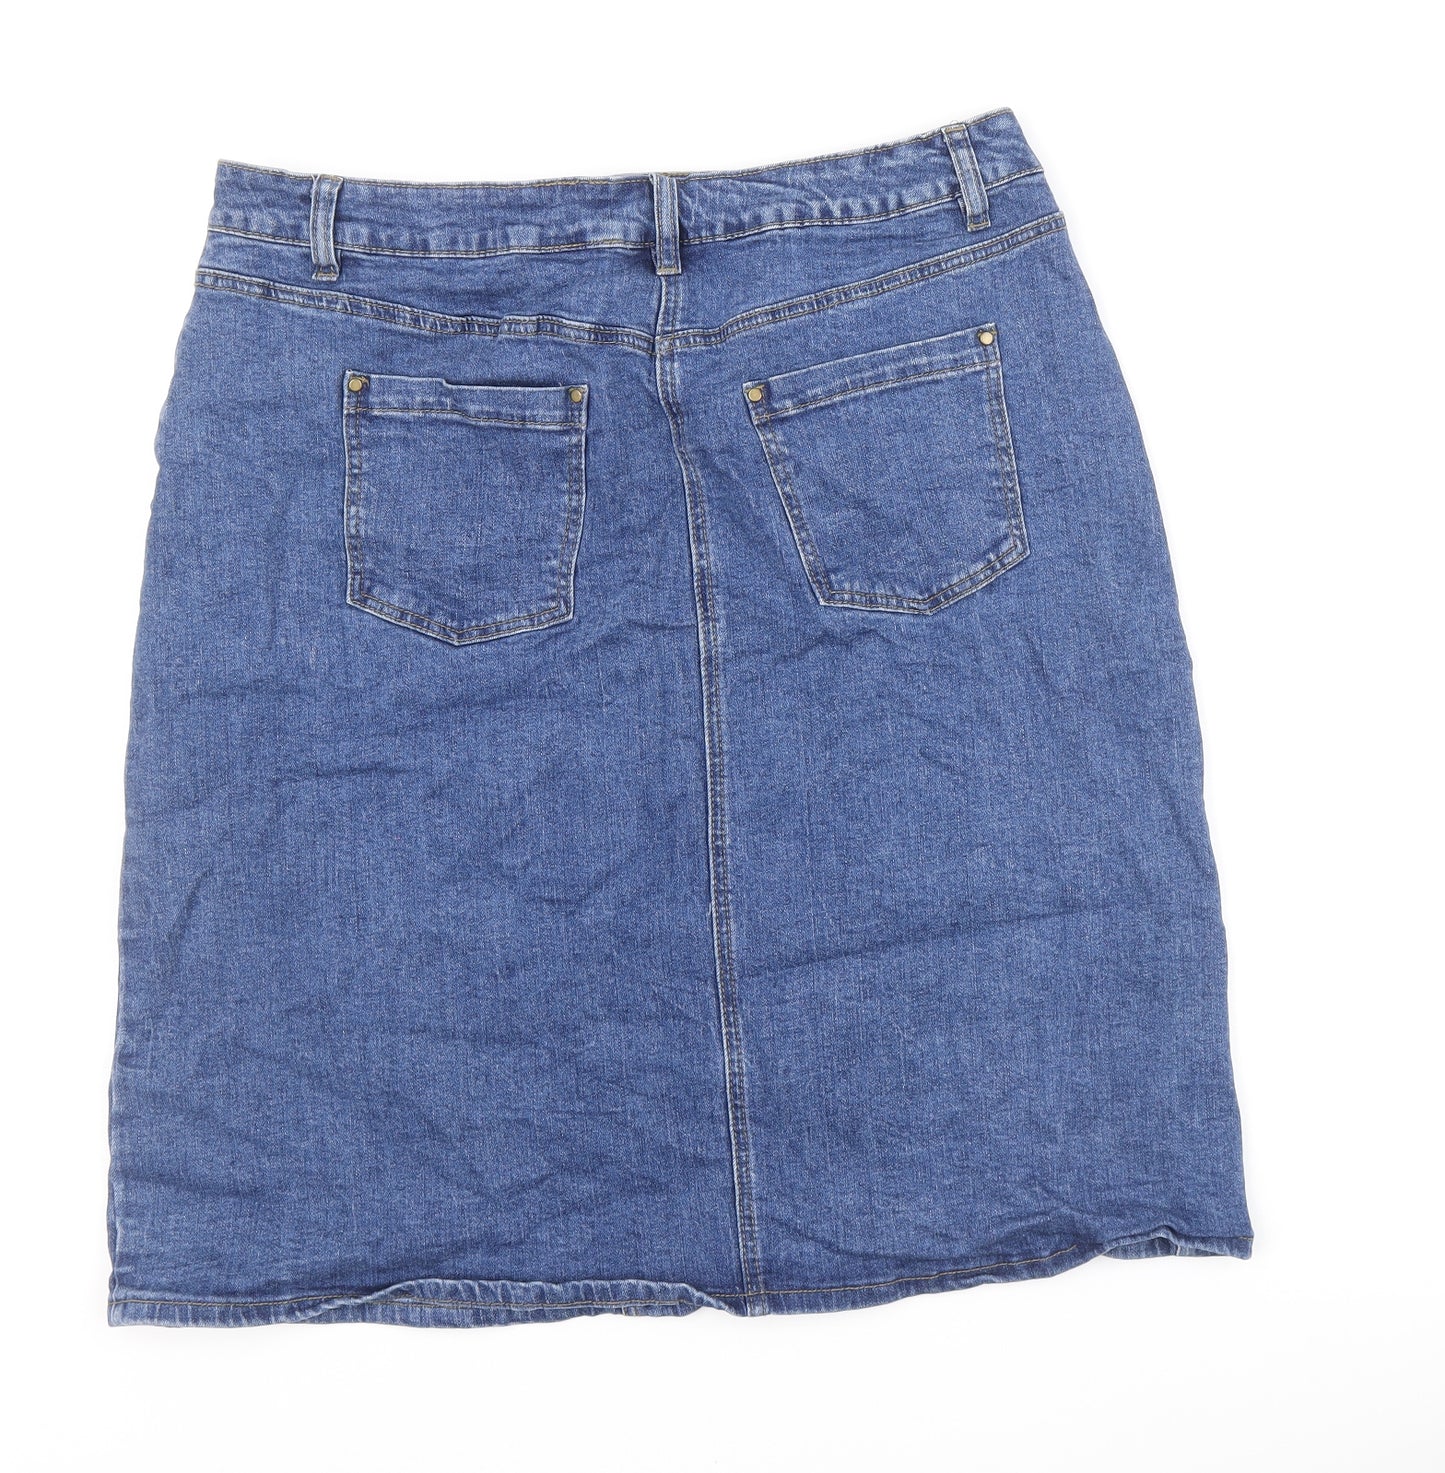 Roman Womens Blue Cotton A-Line Skirt Size 18 Zip